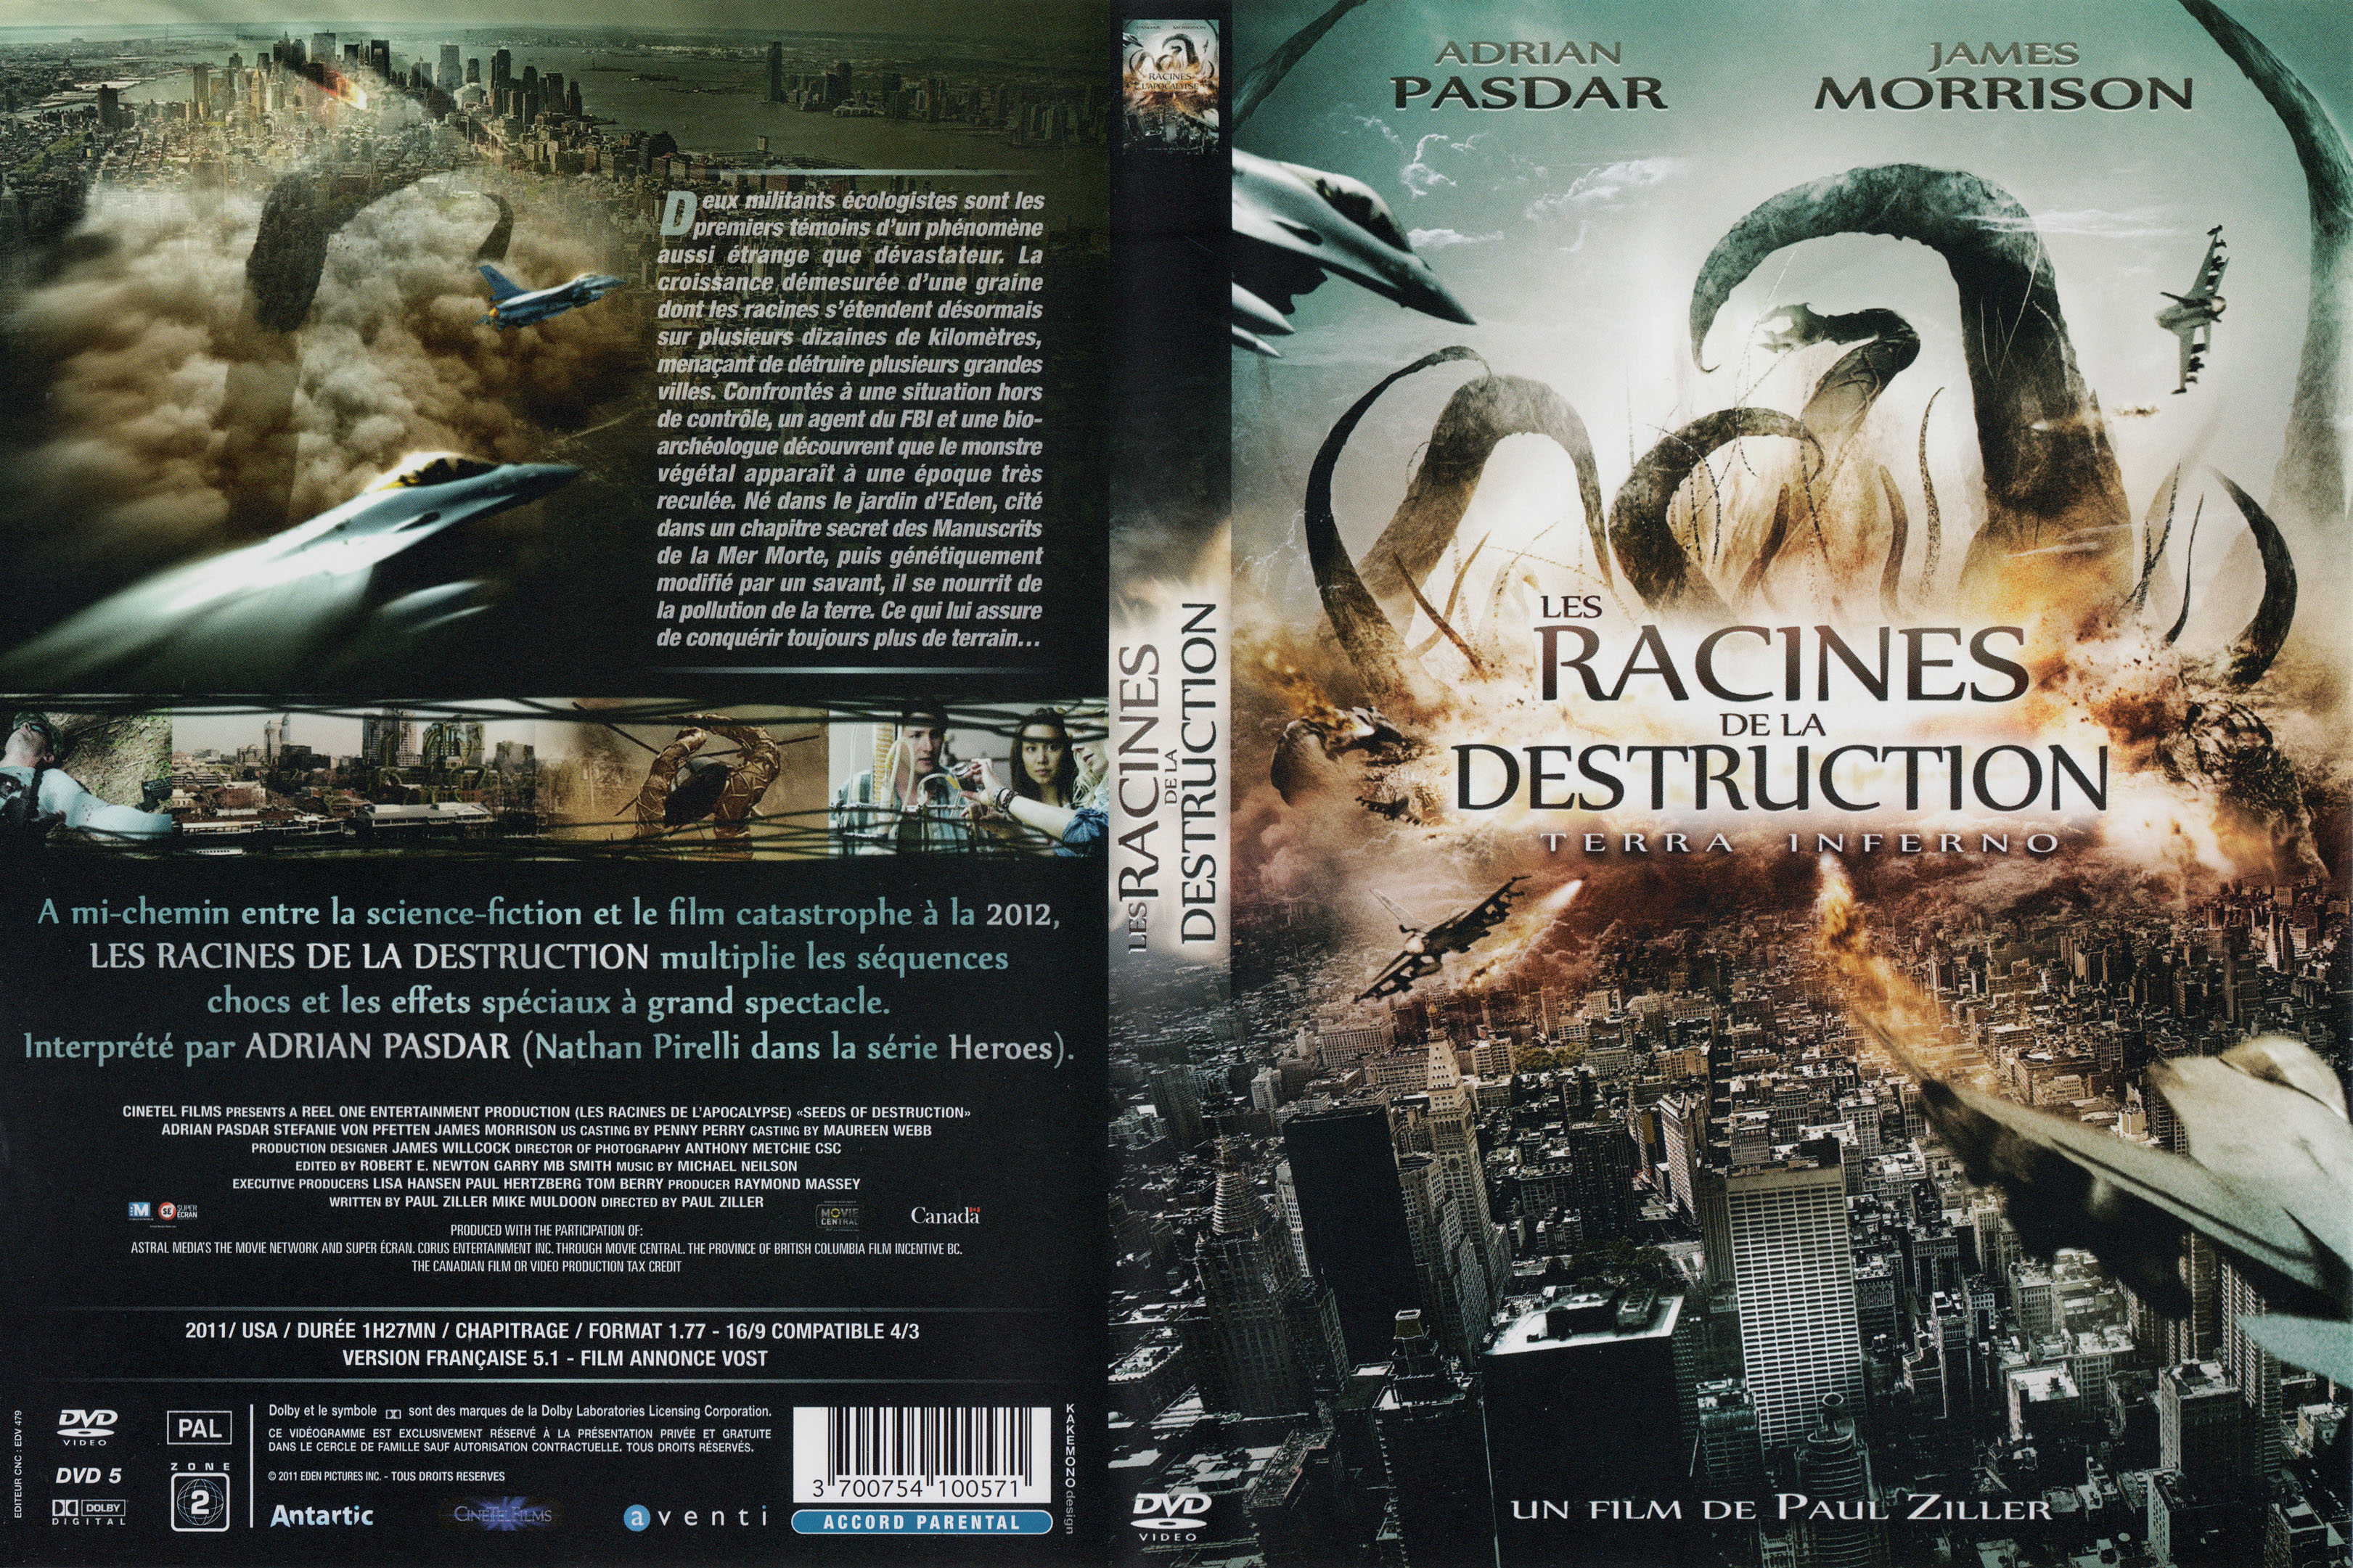 Jaquette DVD Les racines de la destruction